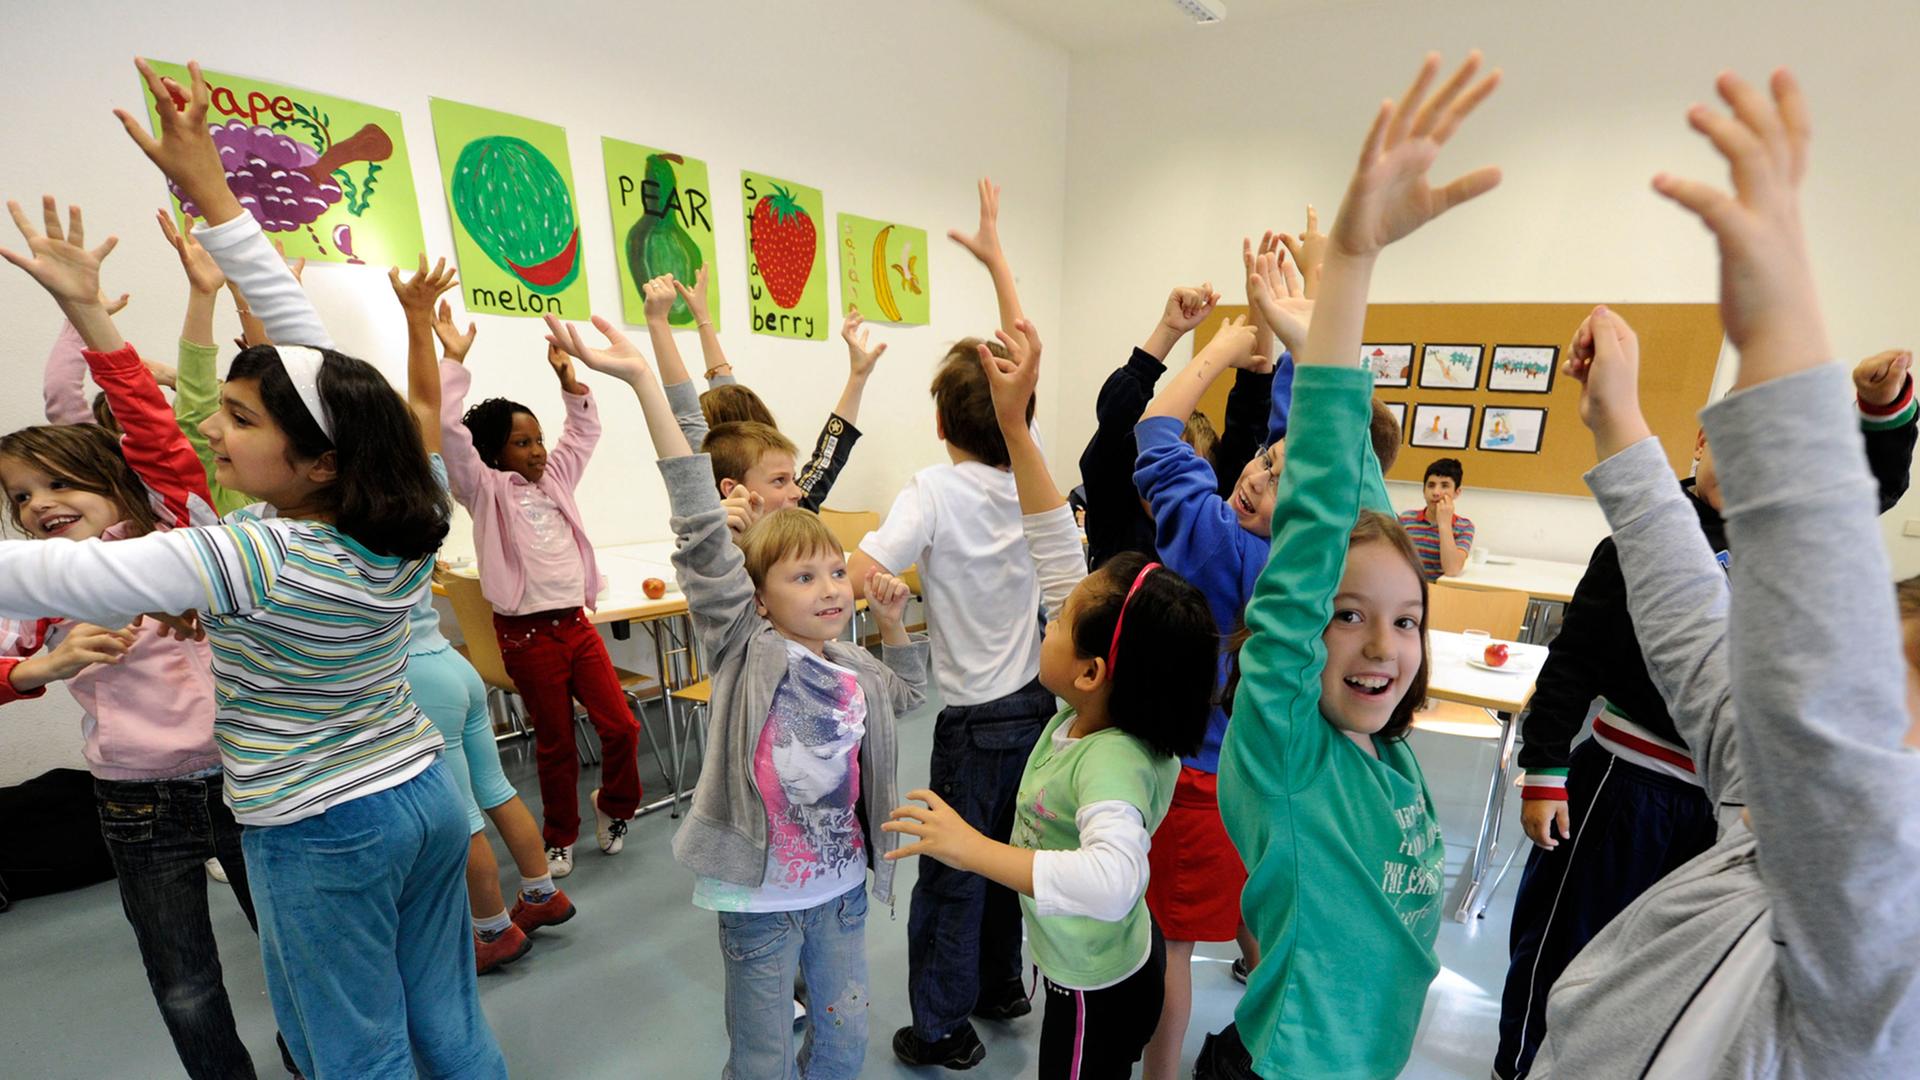 Kinder stehen in einem Klassenraum und heben ihre Arme, an den Wänden bunte Bilder.